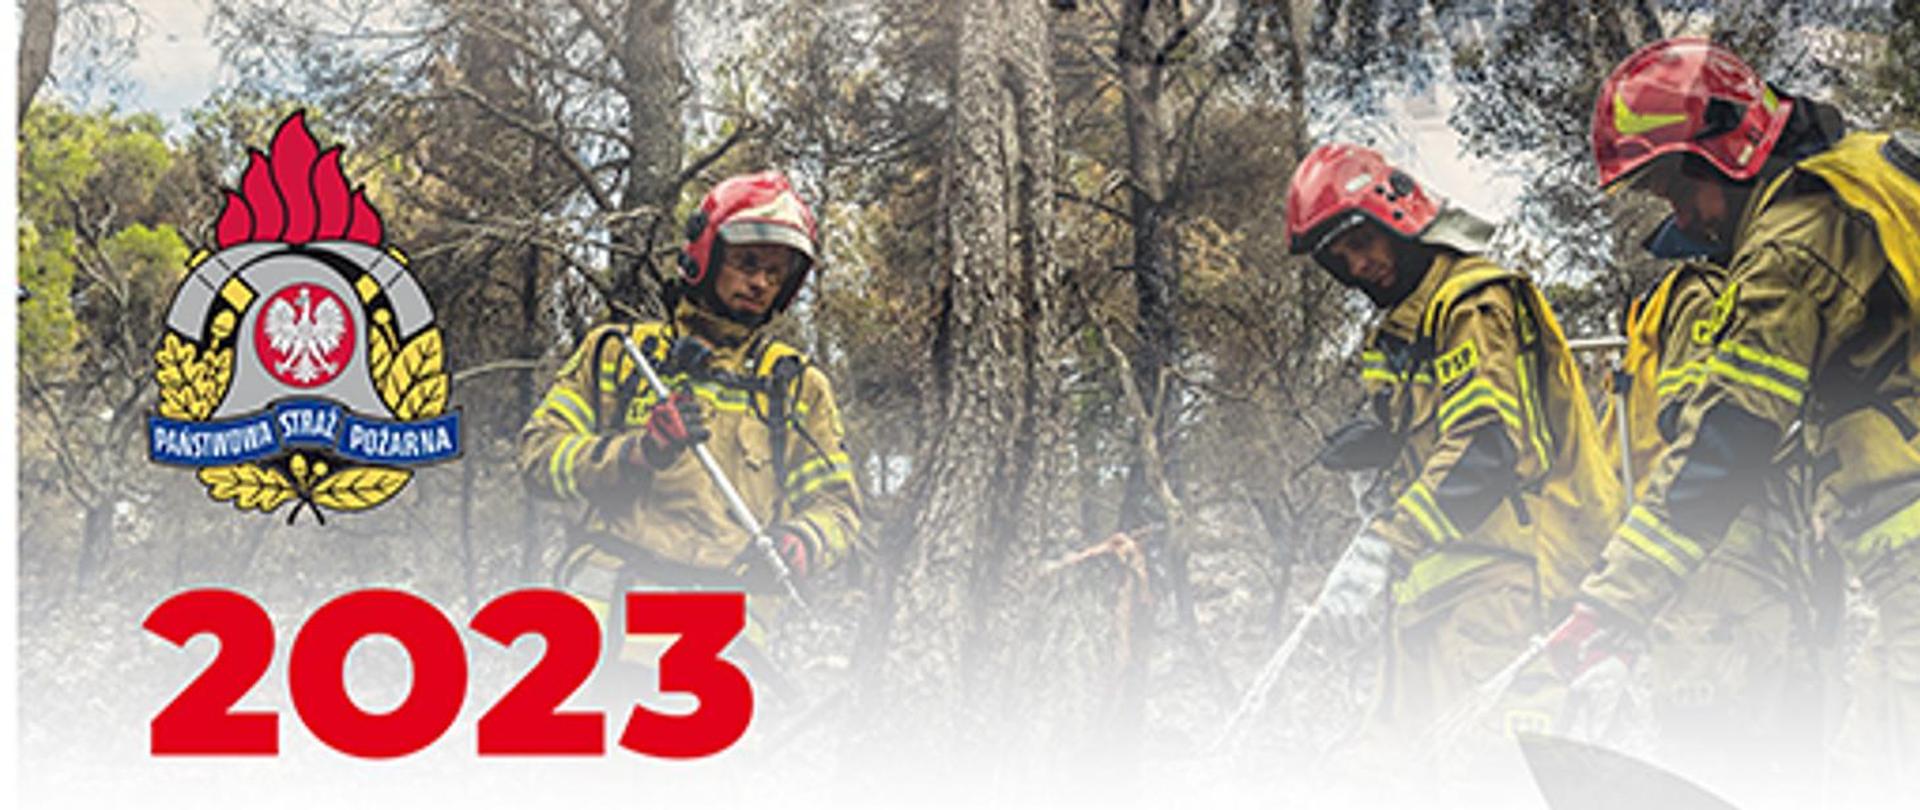 Ogłoszenie konkursów kalendarzowych – rok 2023 - na zdjęciu strażacy w ubraniach strażackich gaszą pożar w lesie